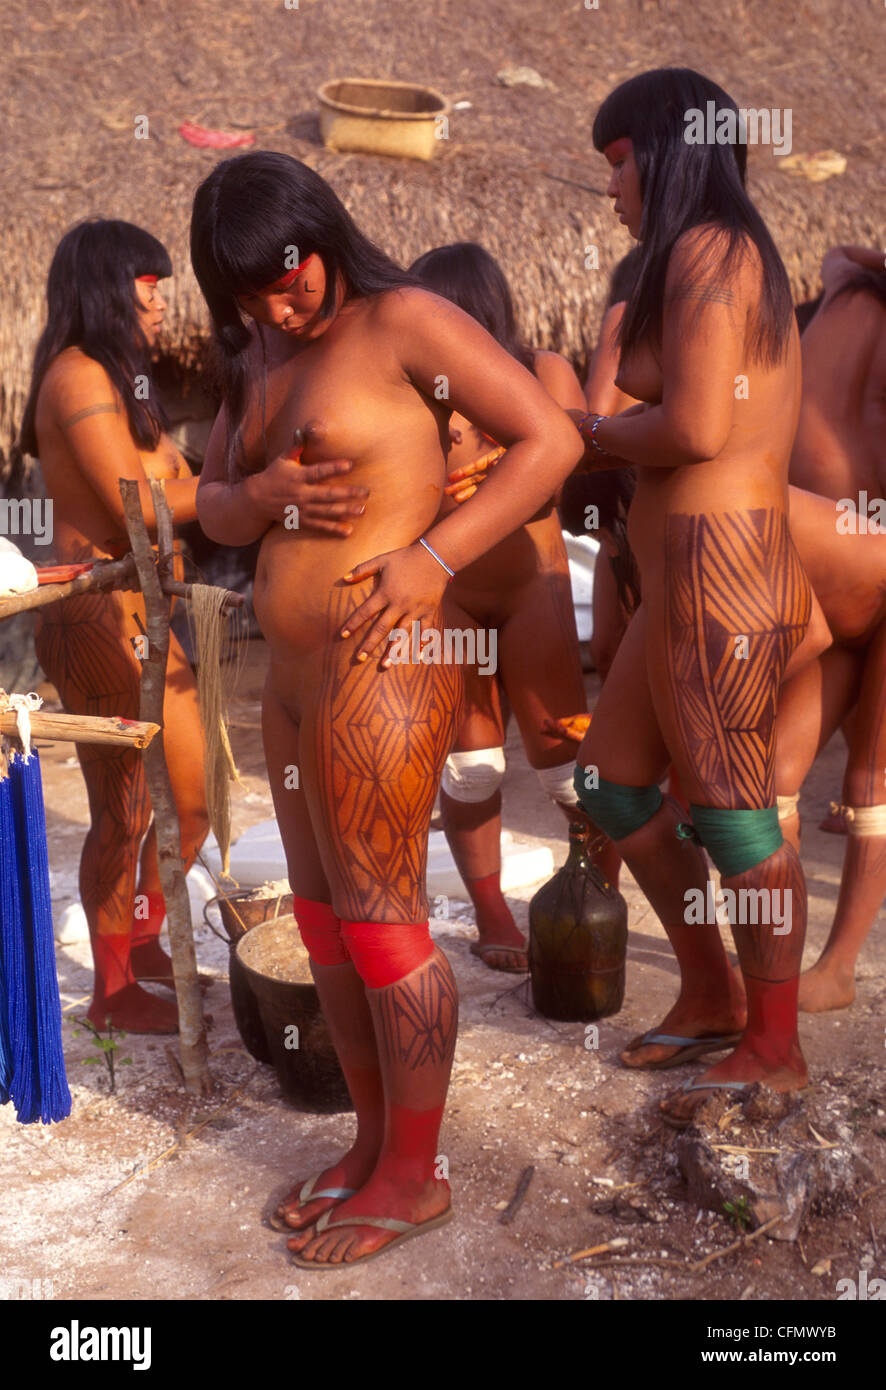 Дикие племена голых амазонок - порно фото optnp.ru